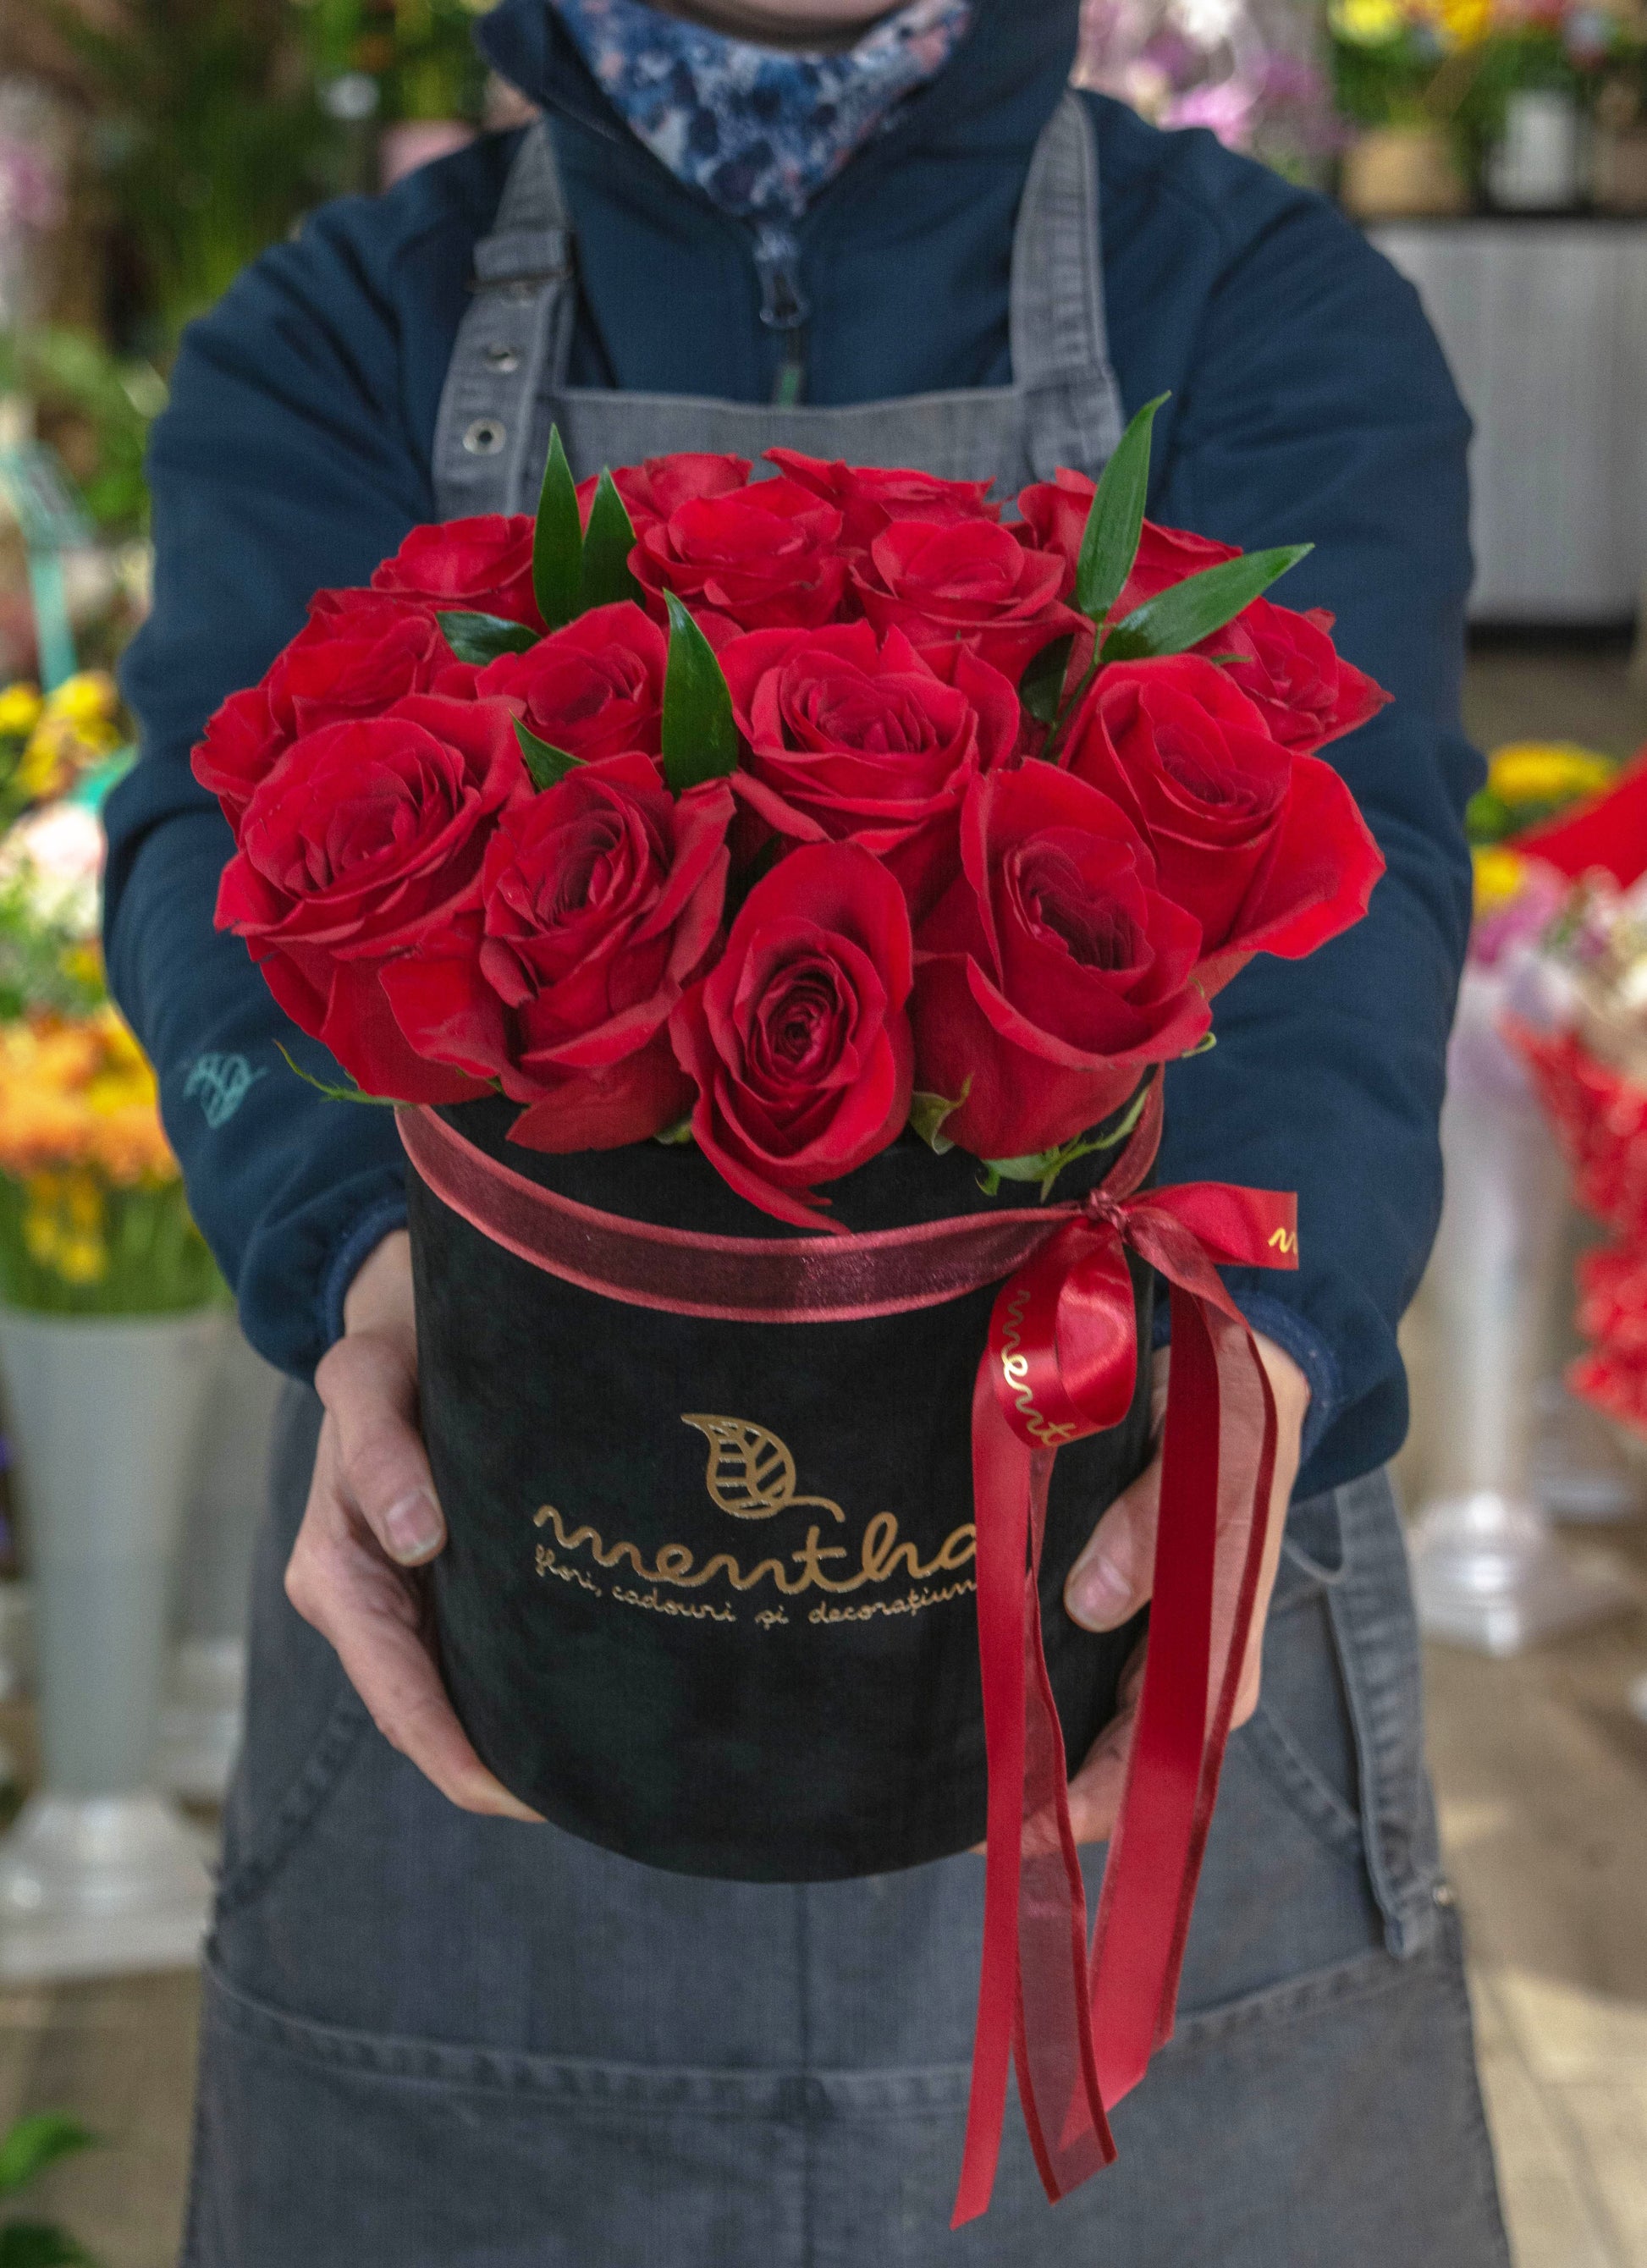 Detaliu din cutia noastră simplă și sofisticată, prezentând trandafiri roșii - simbolul iubirii pure și pasiunii, cu livrare GRATUITĂ în Resita.